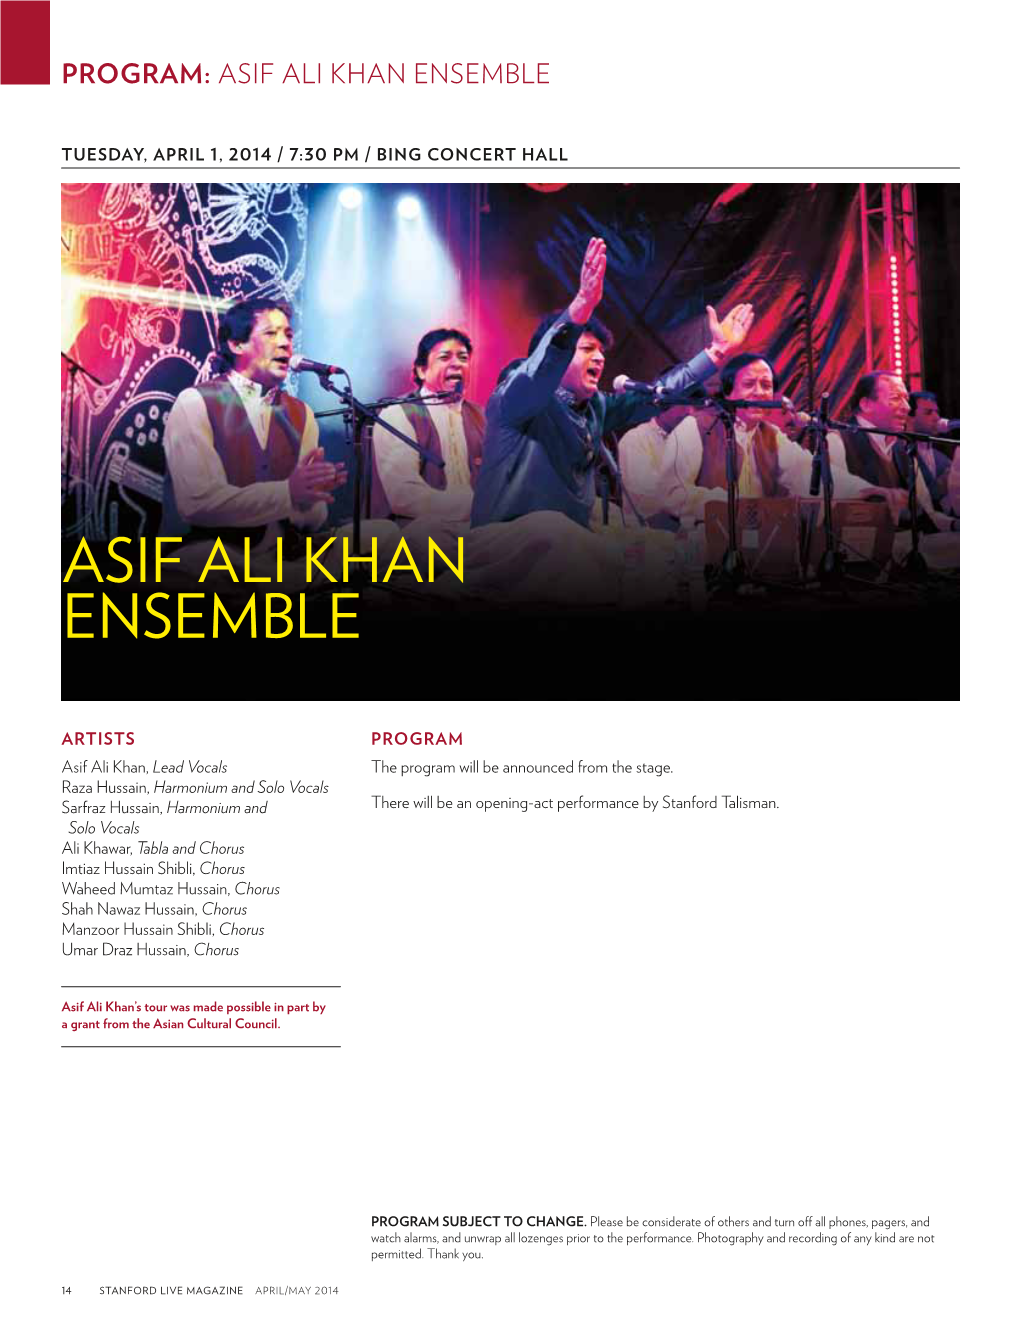 Asif Ali Khan Ensemble